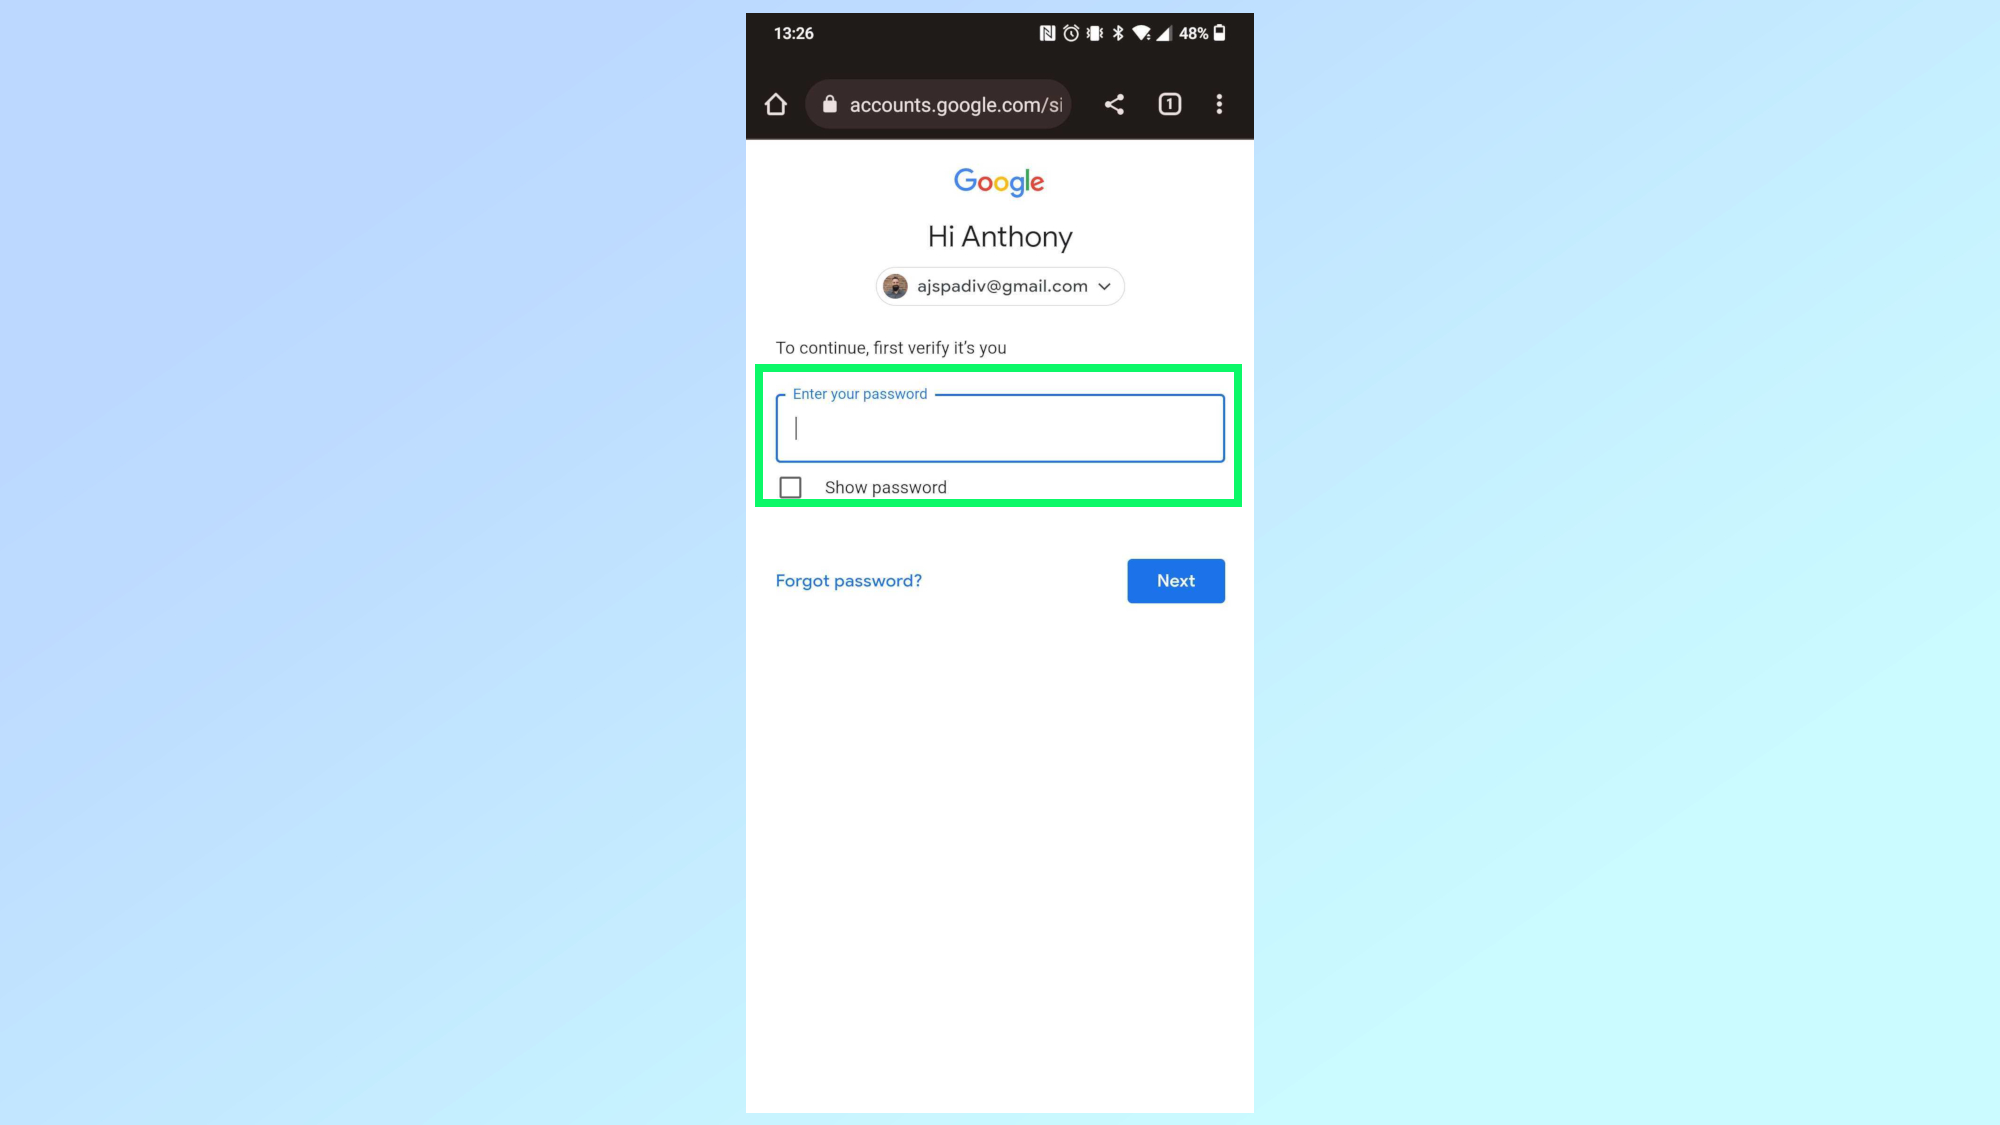 تسجيل الدخول إلى حساب Google الخاص بك باستخدام كلمة المرور الخاصة بك